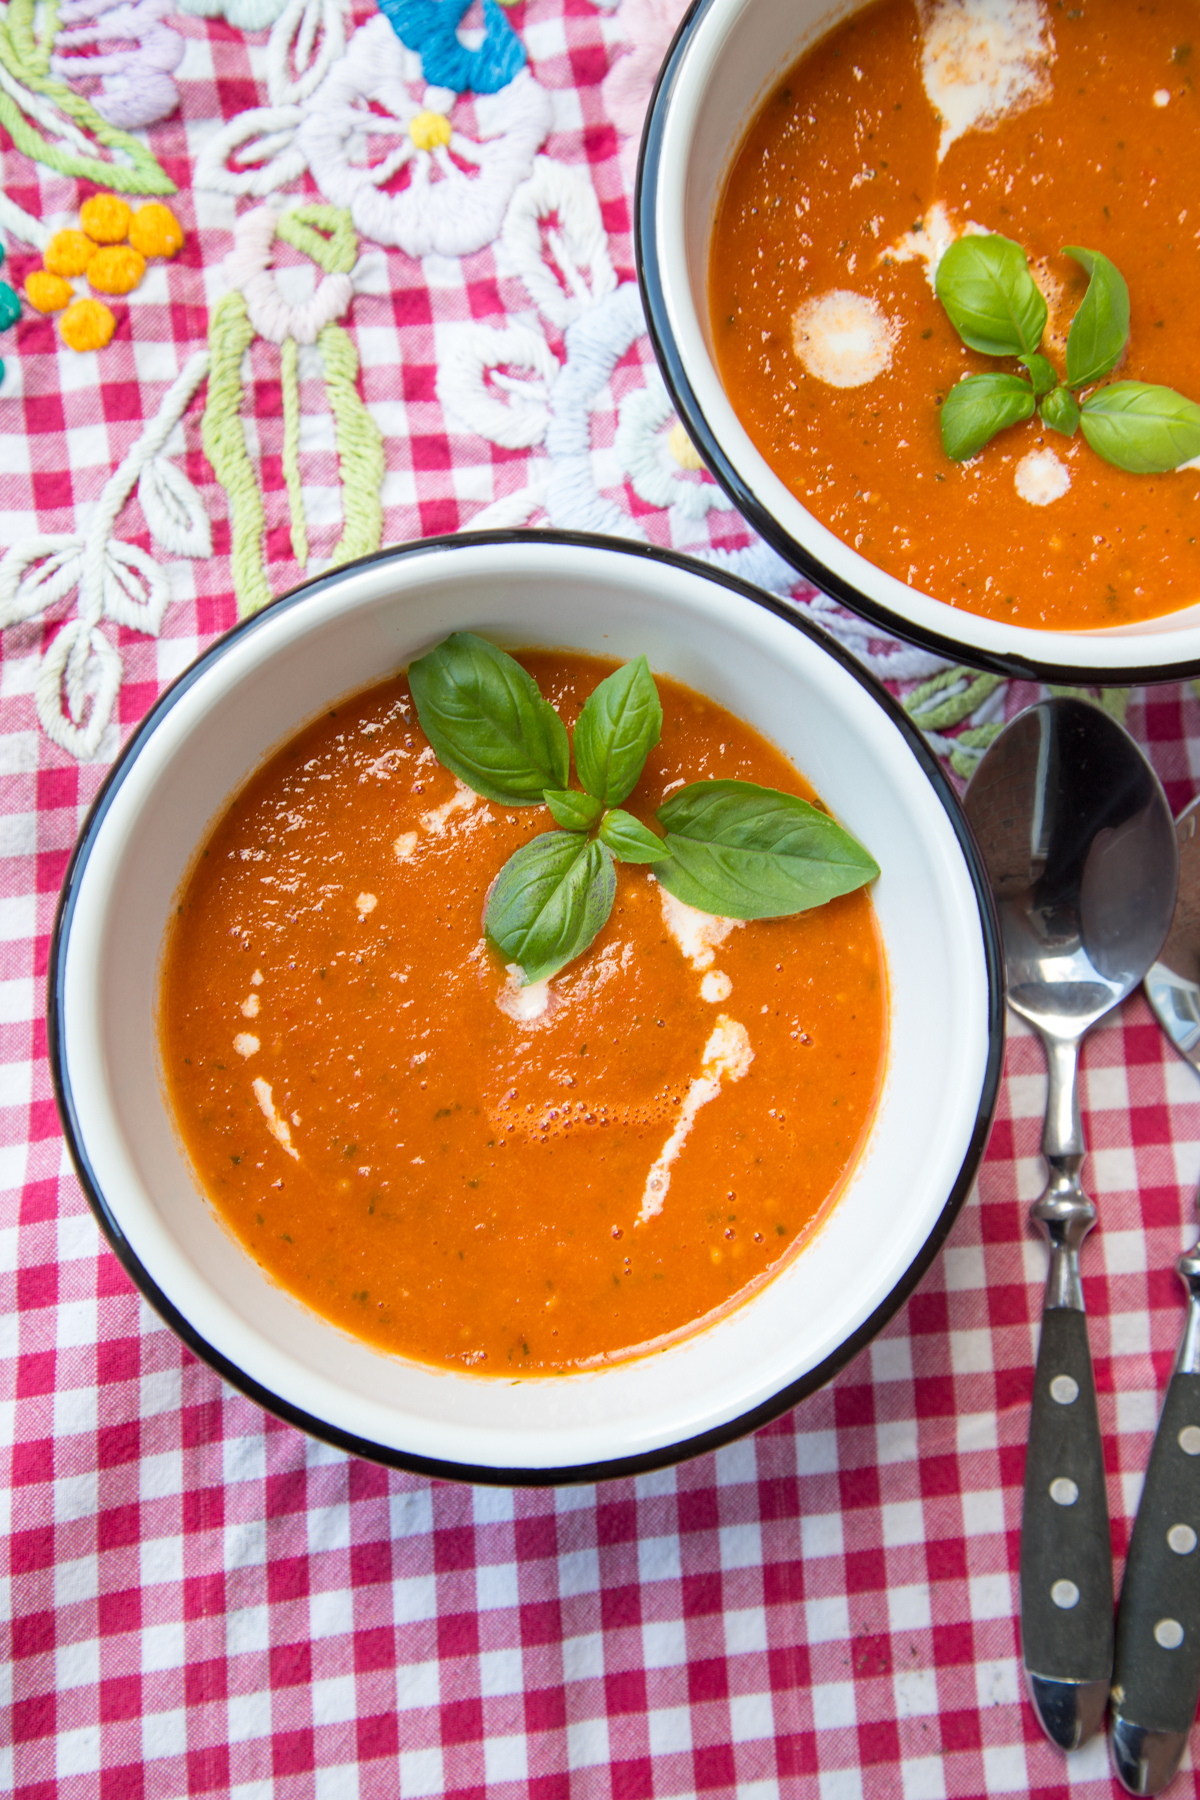 Schnelle und aromatische Ofentomatensuppe gefällig? Suppe kochen war noch nie so einfach! Die Tomaten werden im Ofen geröstet und die Suppe wird besonders gut